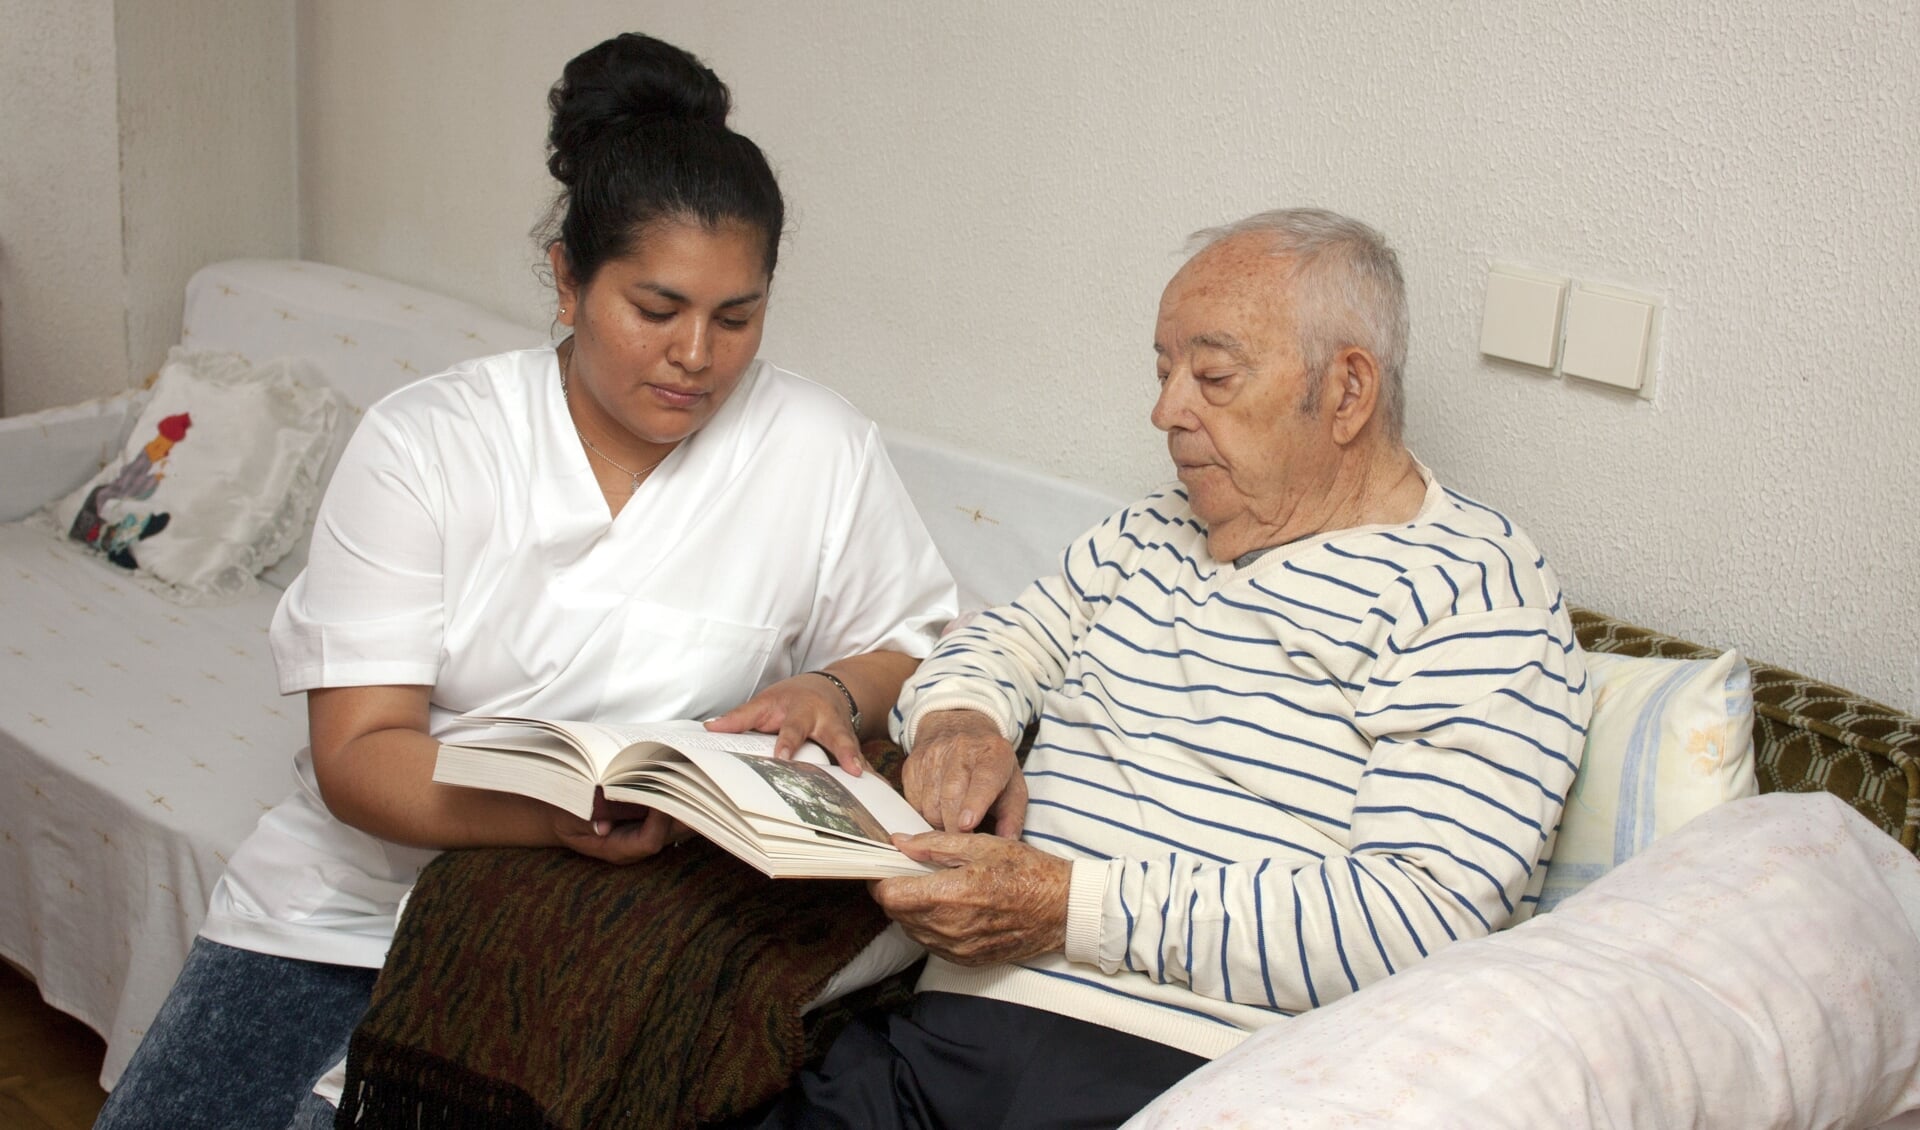 De vergrijzing neemt toe en ouderen wonen gemiddeld langer thuis. En dus neemt ook de thuiszorg toe. 